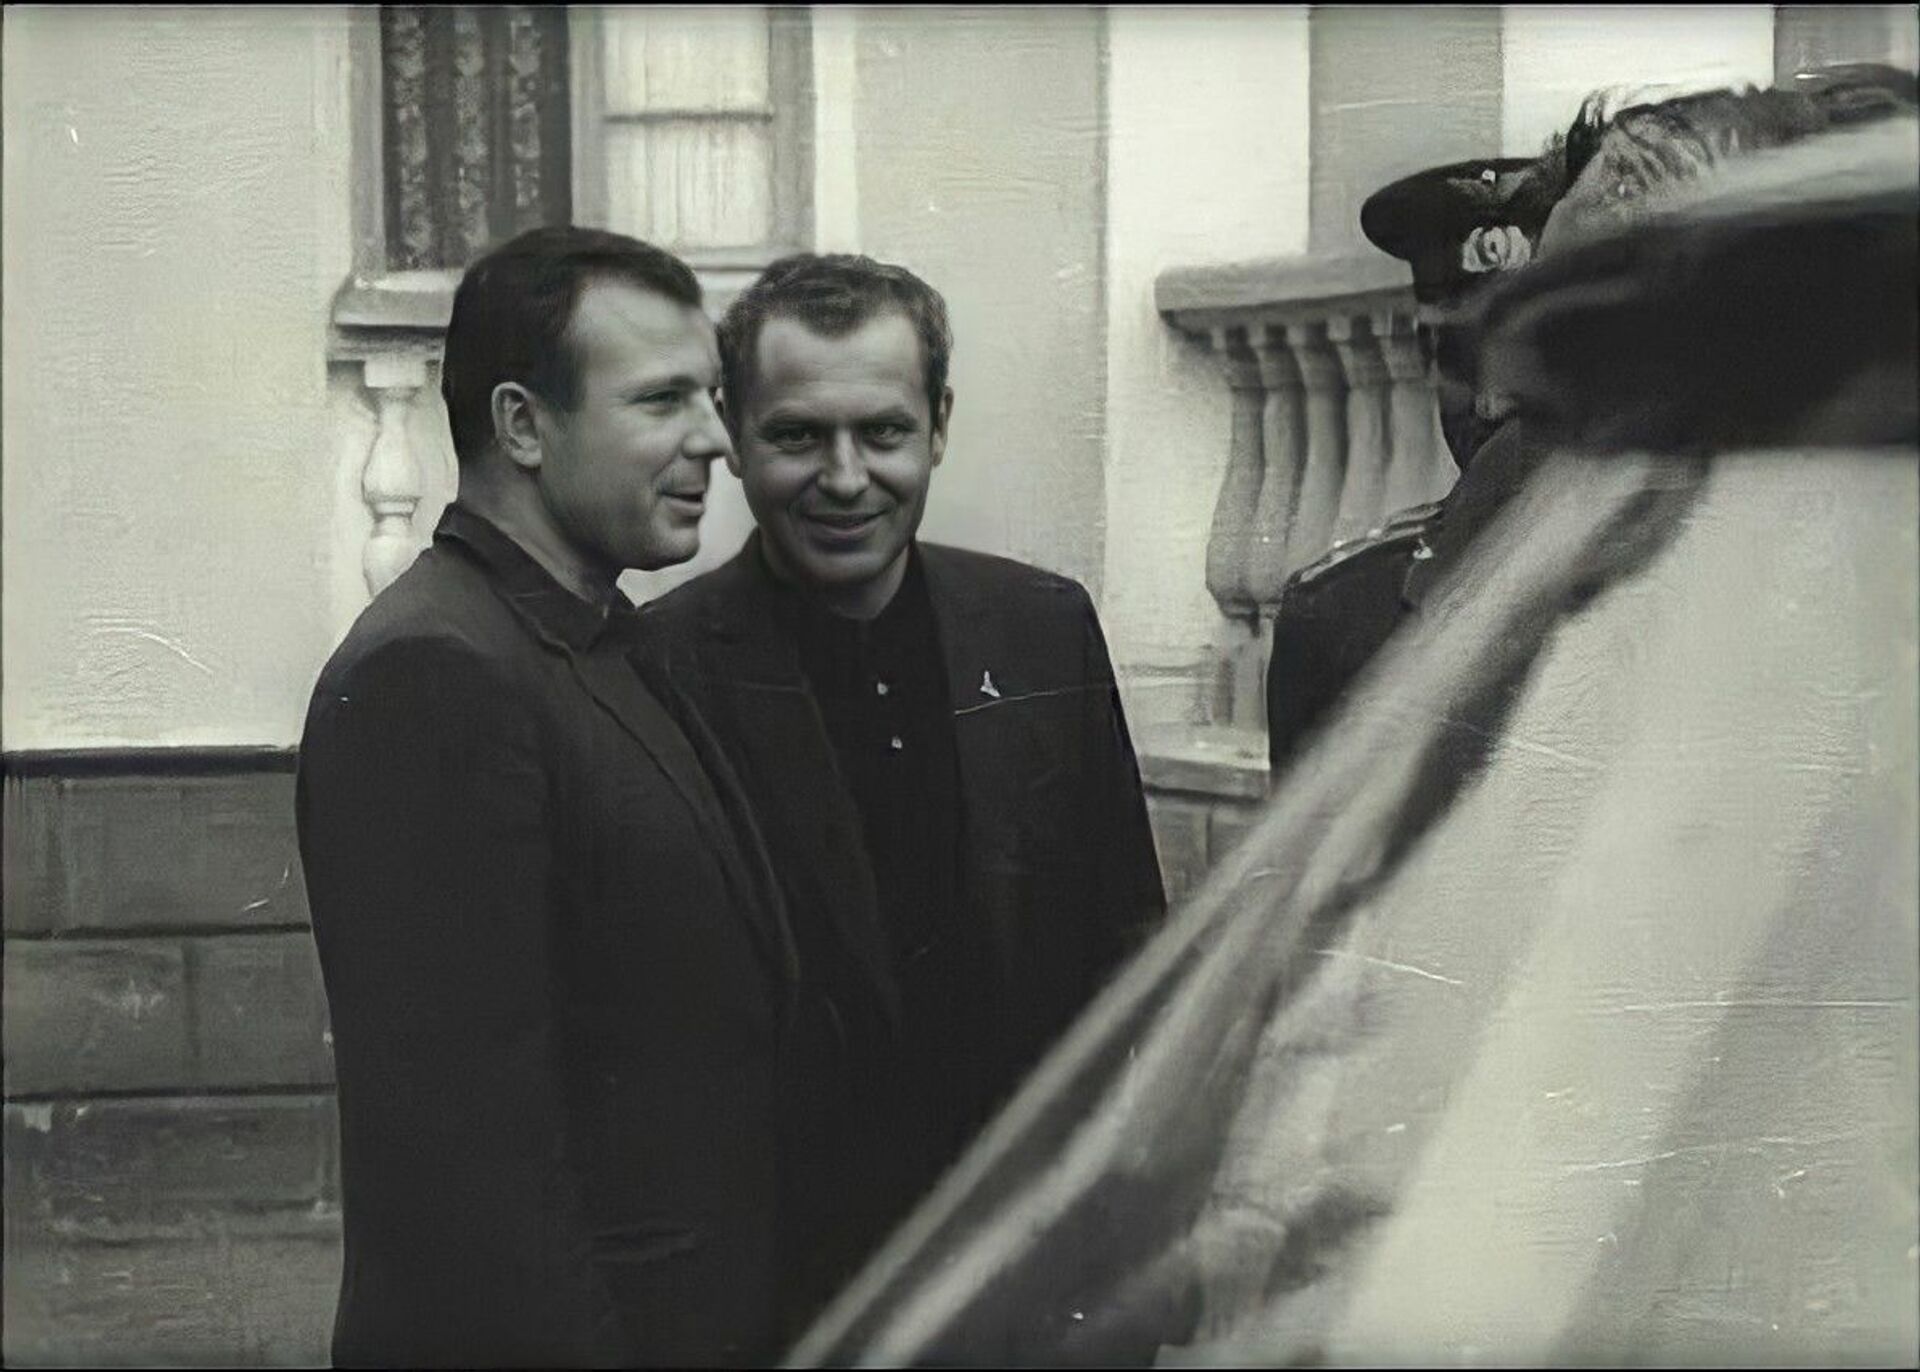 Фото с министром и рыбалка в Отхаре: визит Юрия Гагарина в Абхазию - Sputnik Абхазия, 1920, 12.04.2021